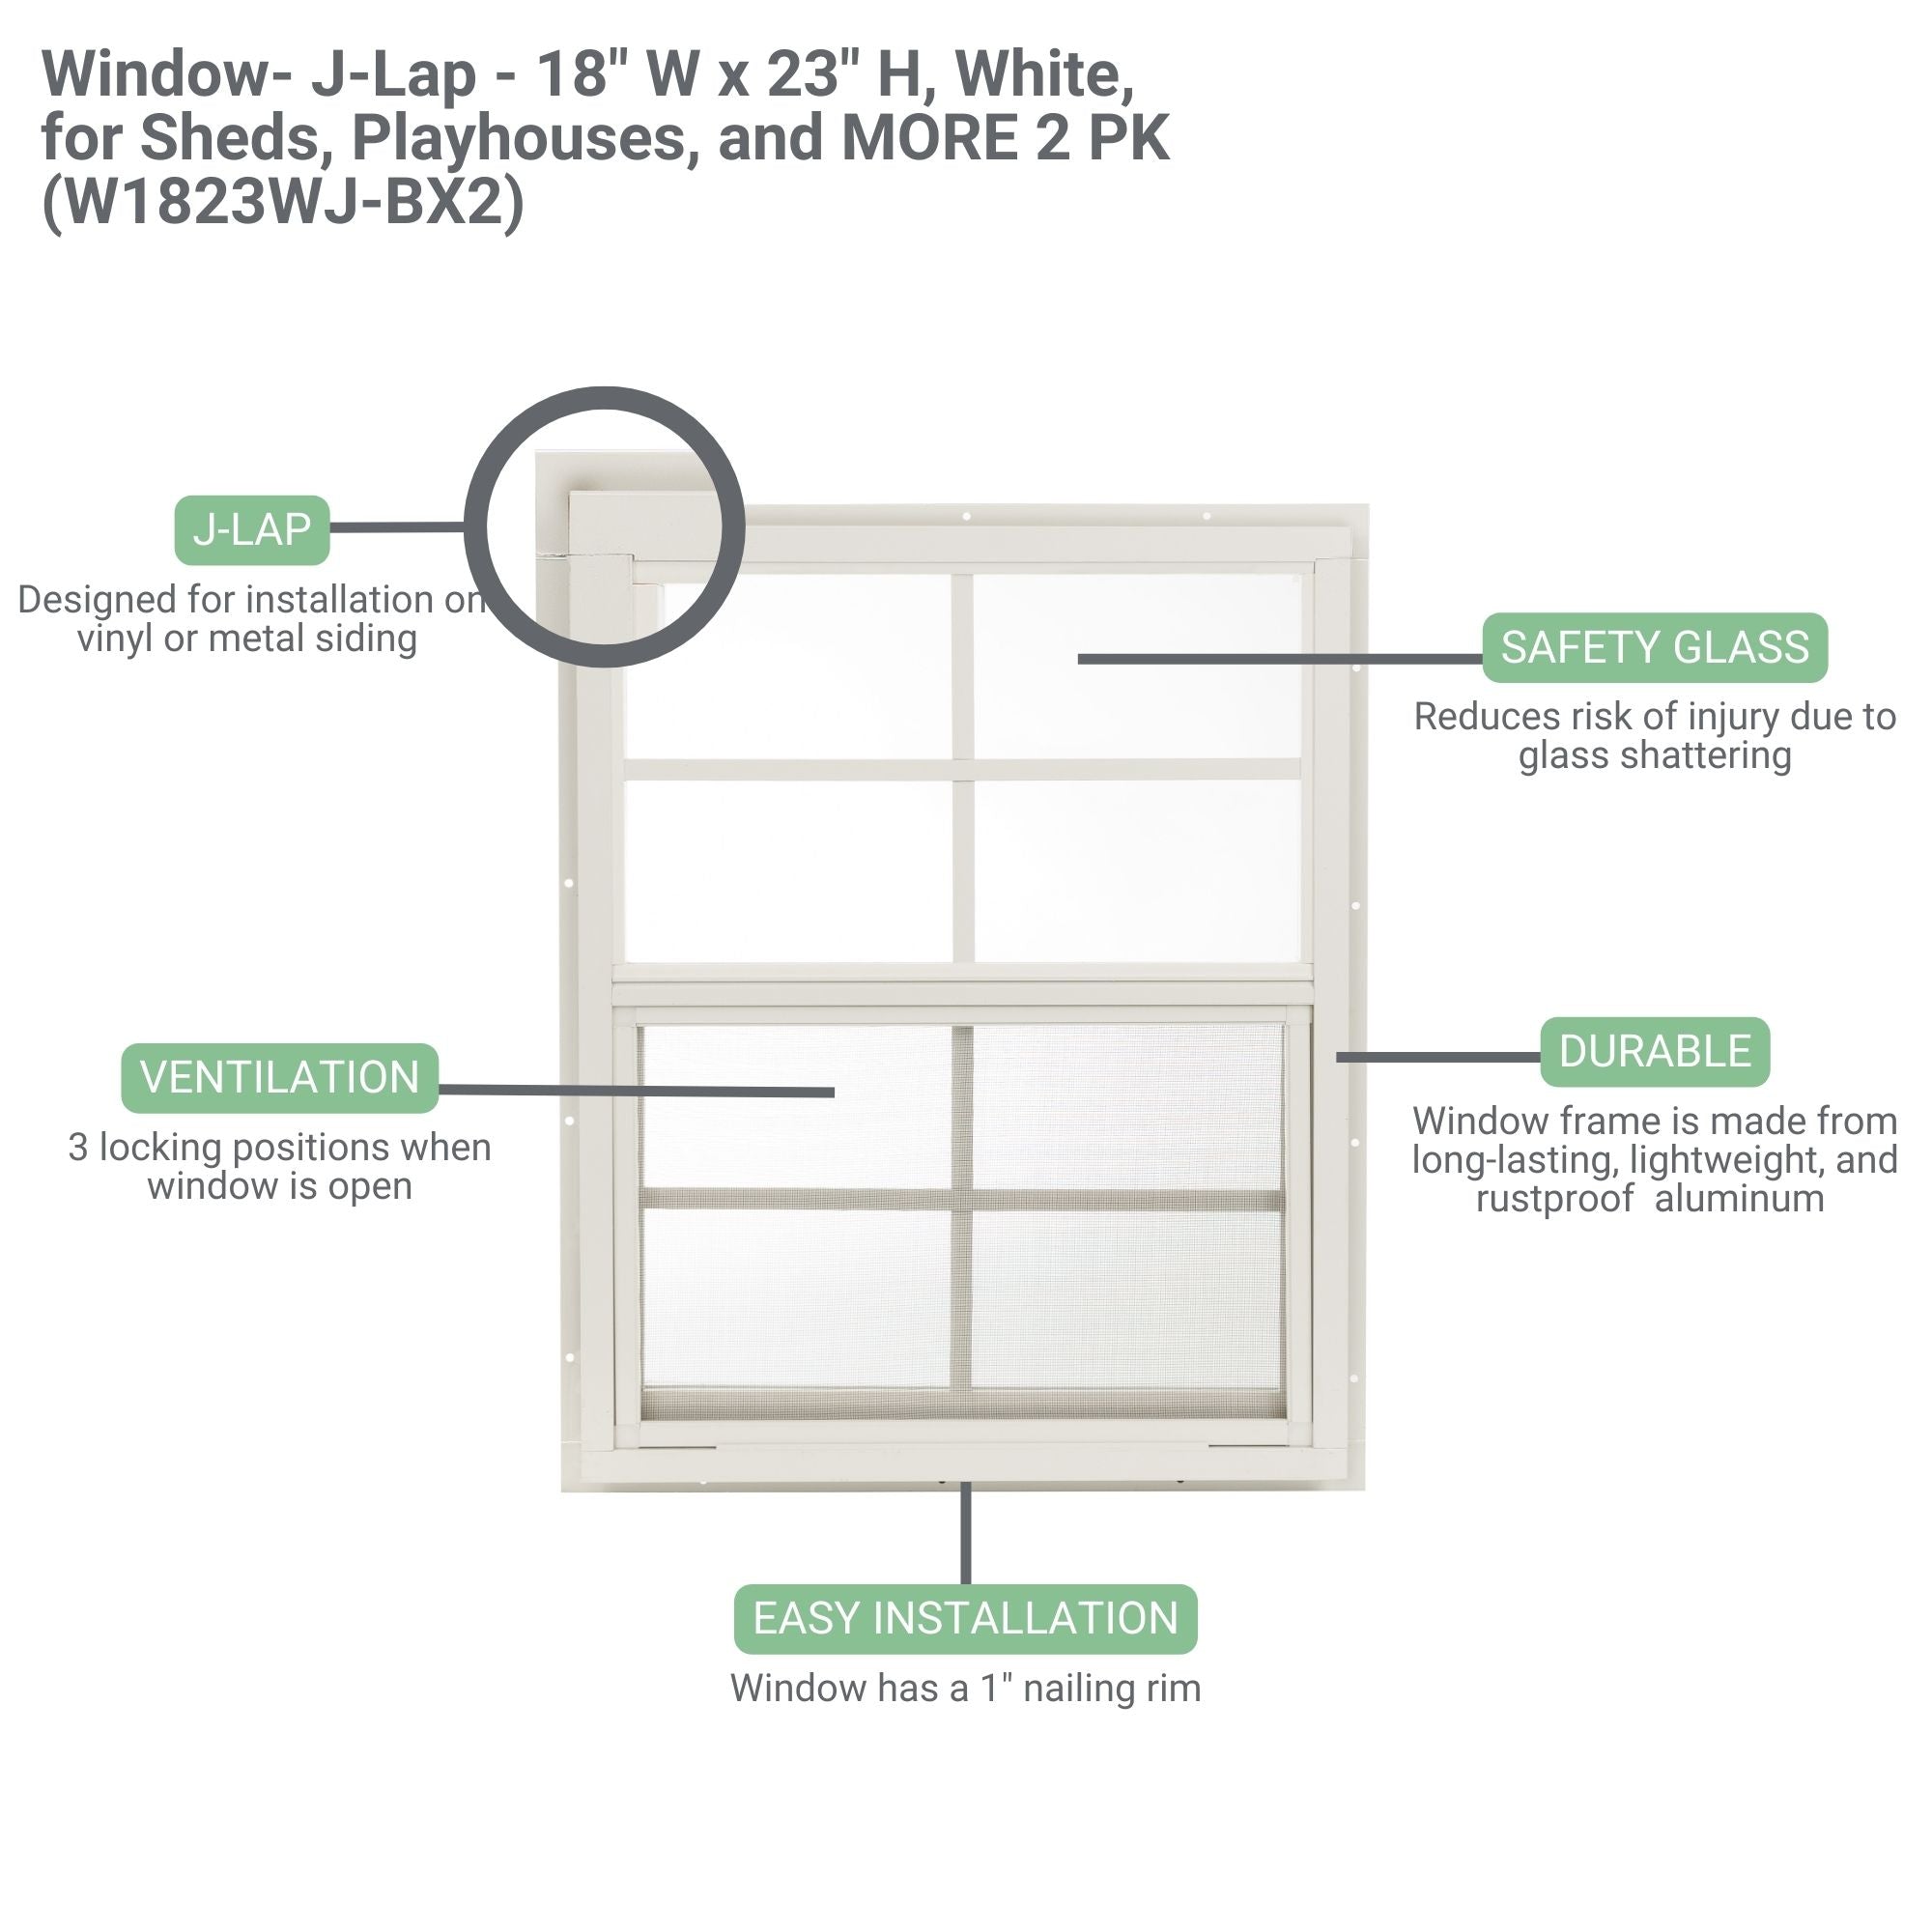 18" W x 23" H J-Lap Shed Window, 2 PK